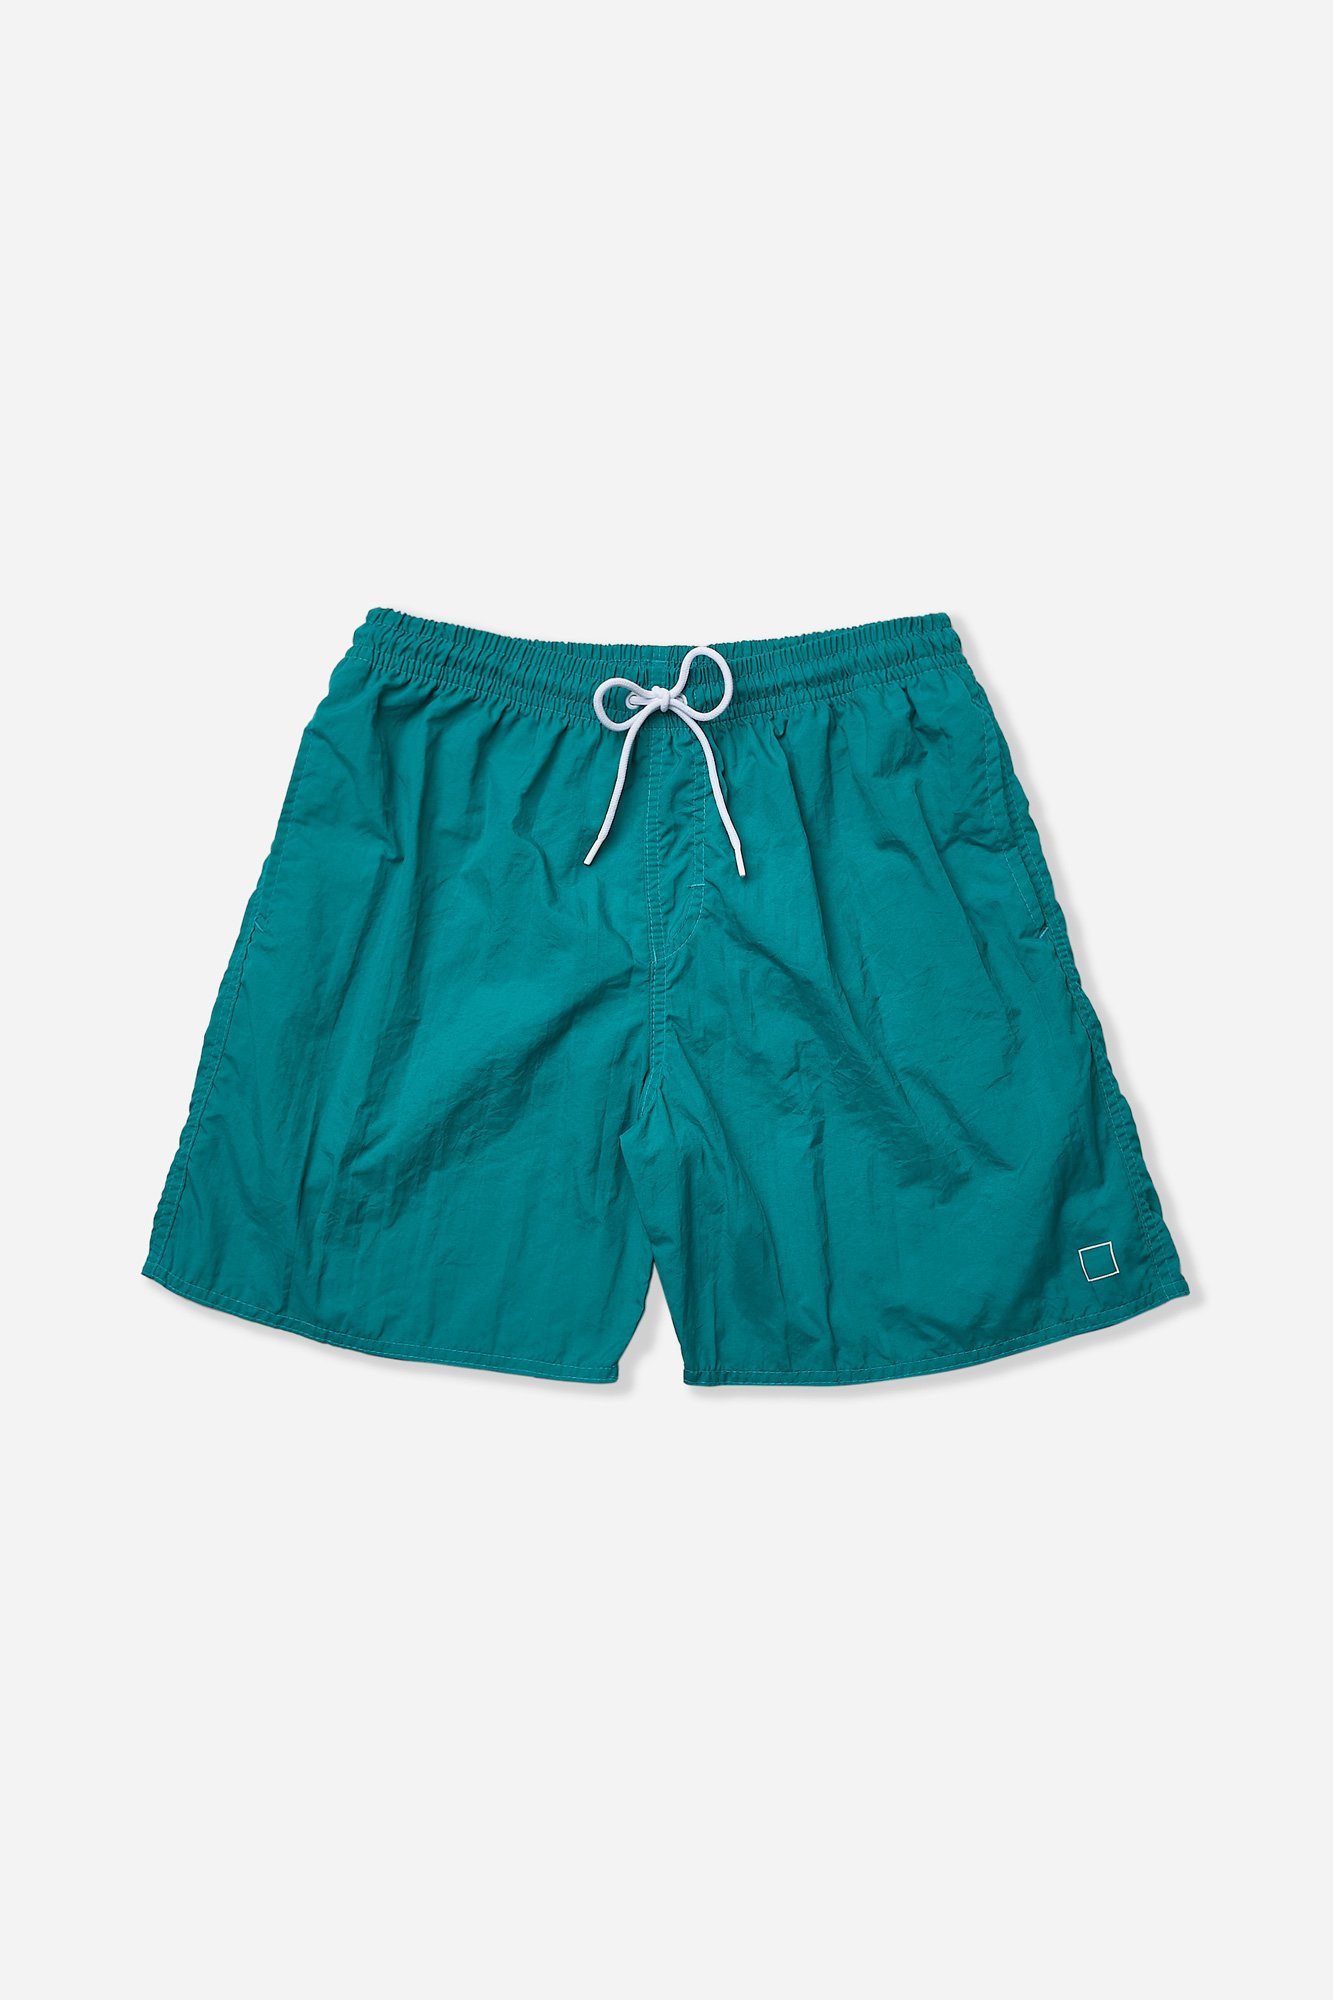 04 shorts poliamida azul marinho